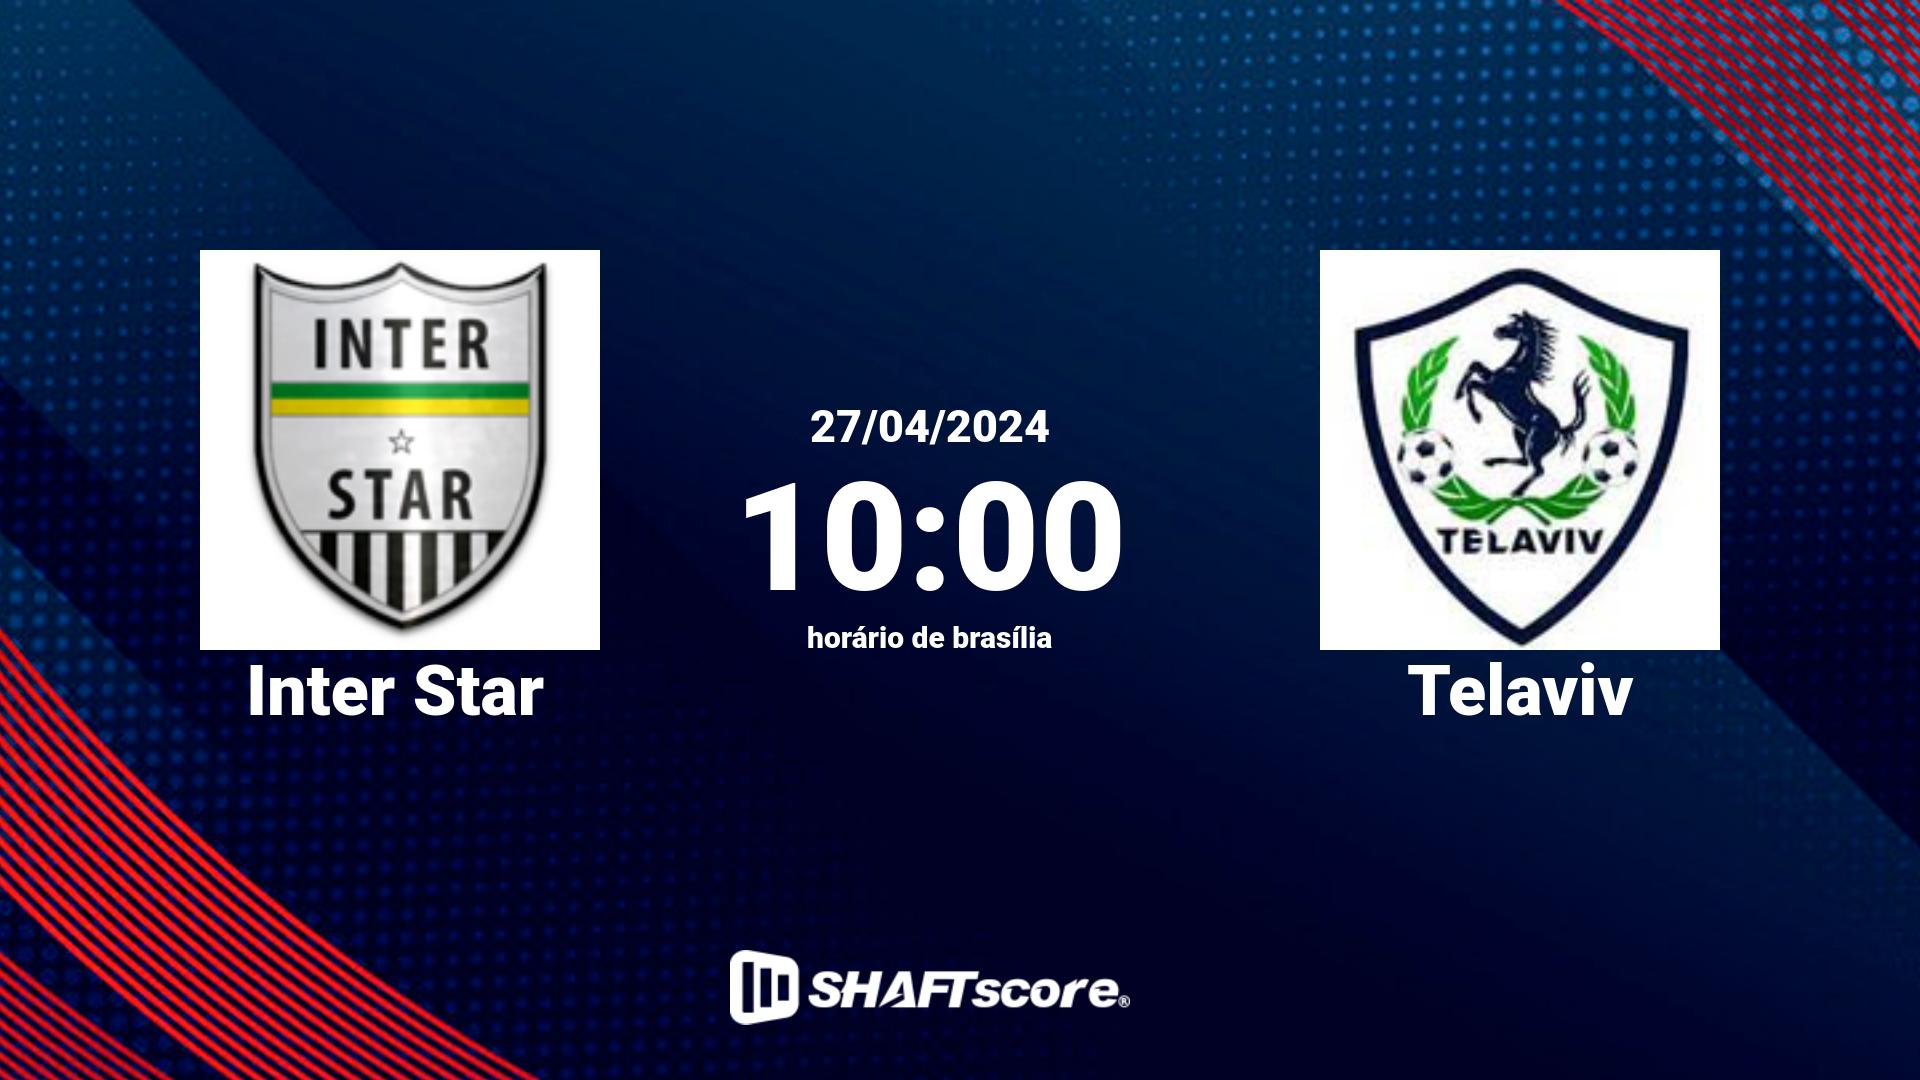 Estatísticas do jogo Inter Star vs Telaviv 27.04 10:00